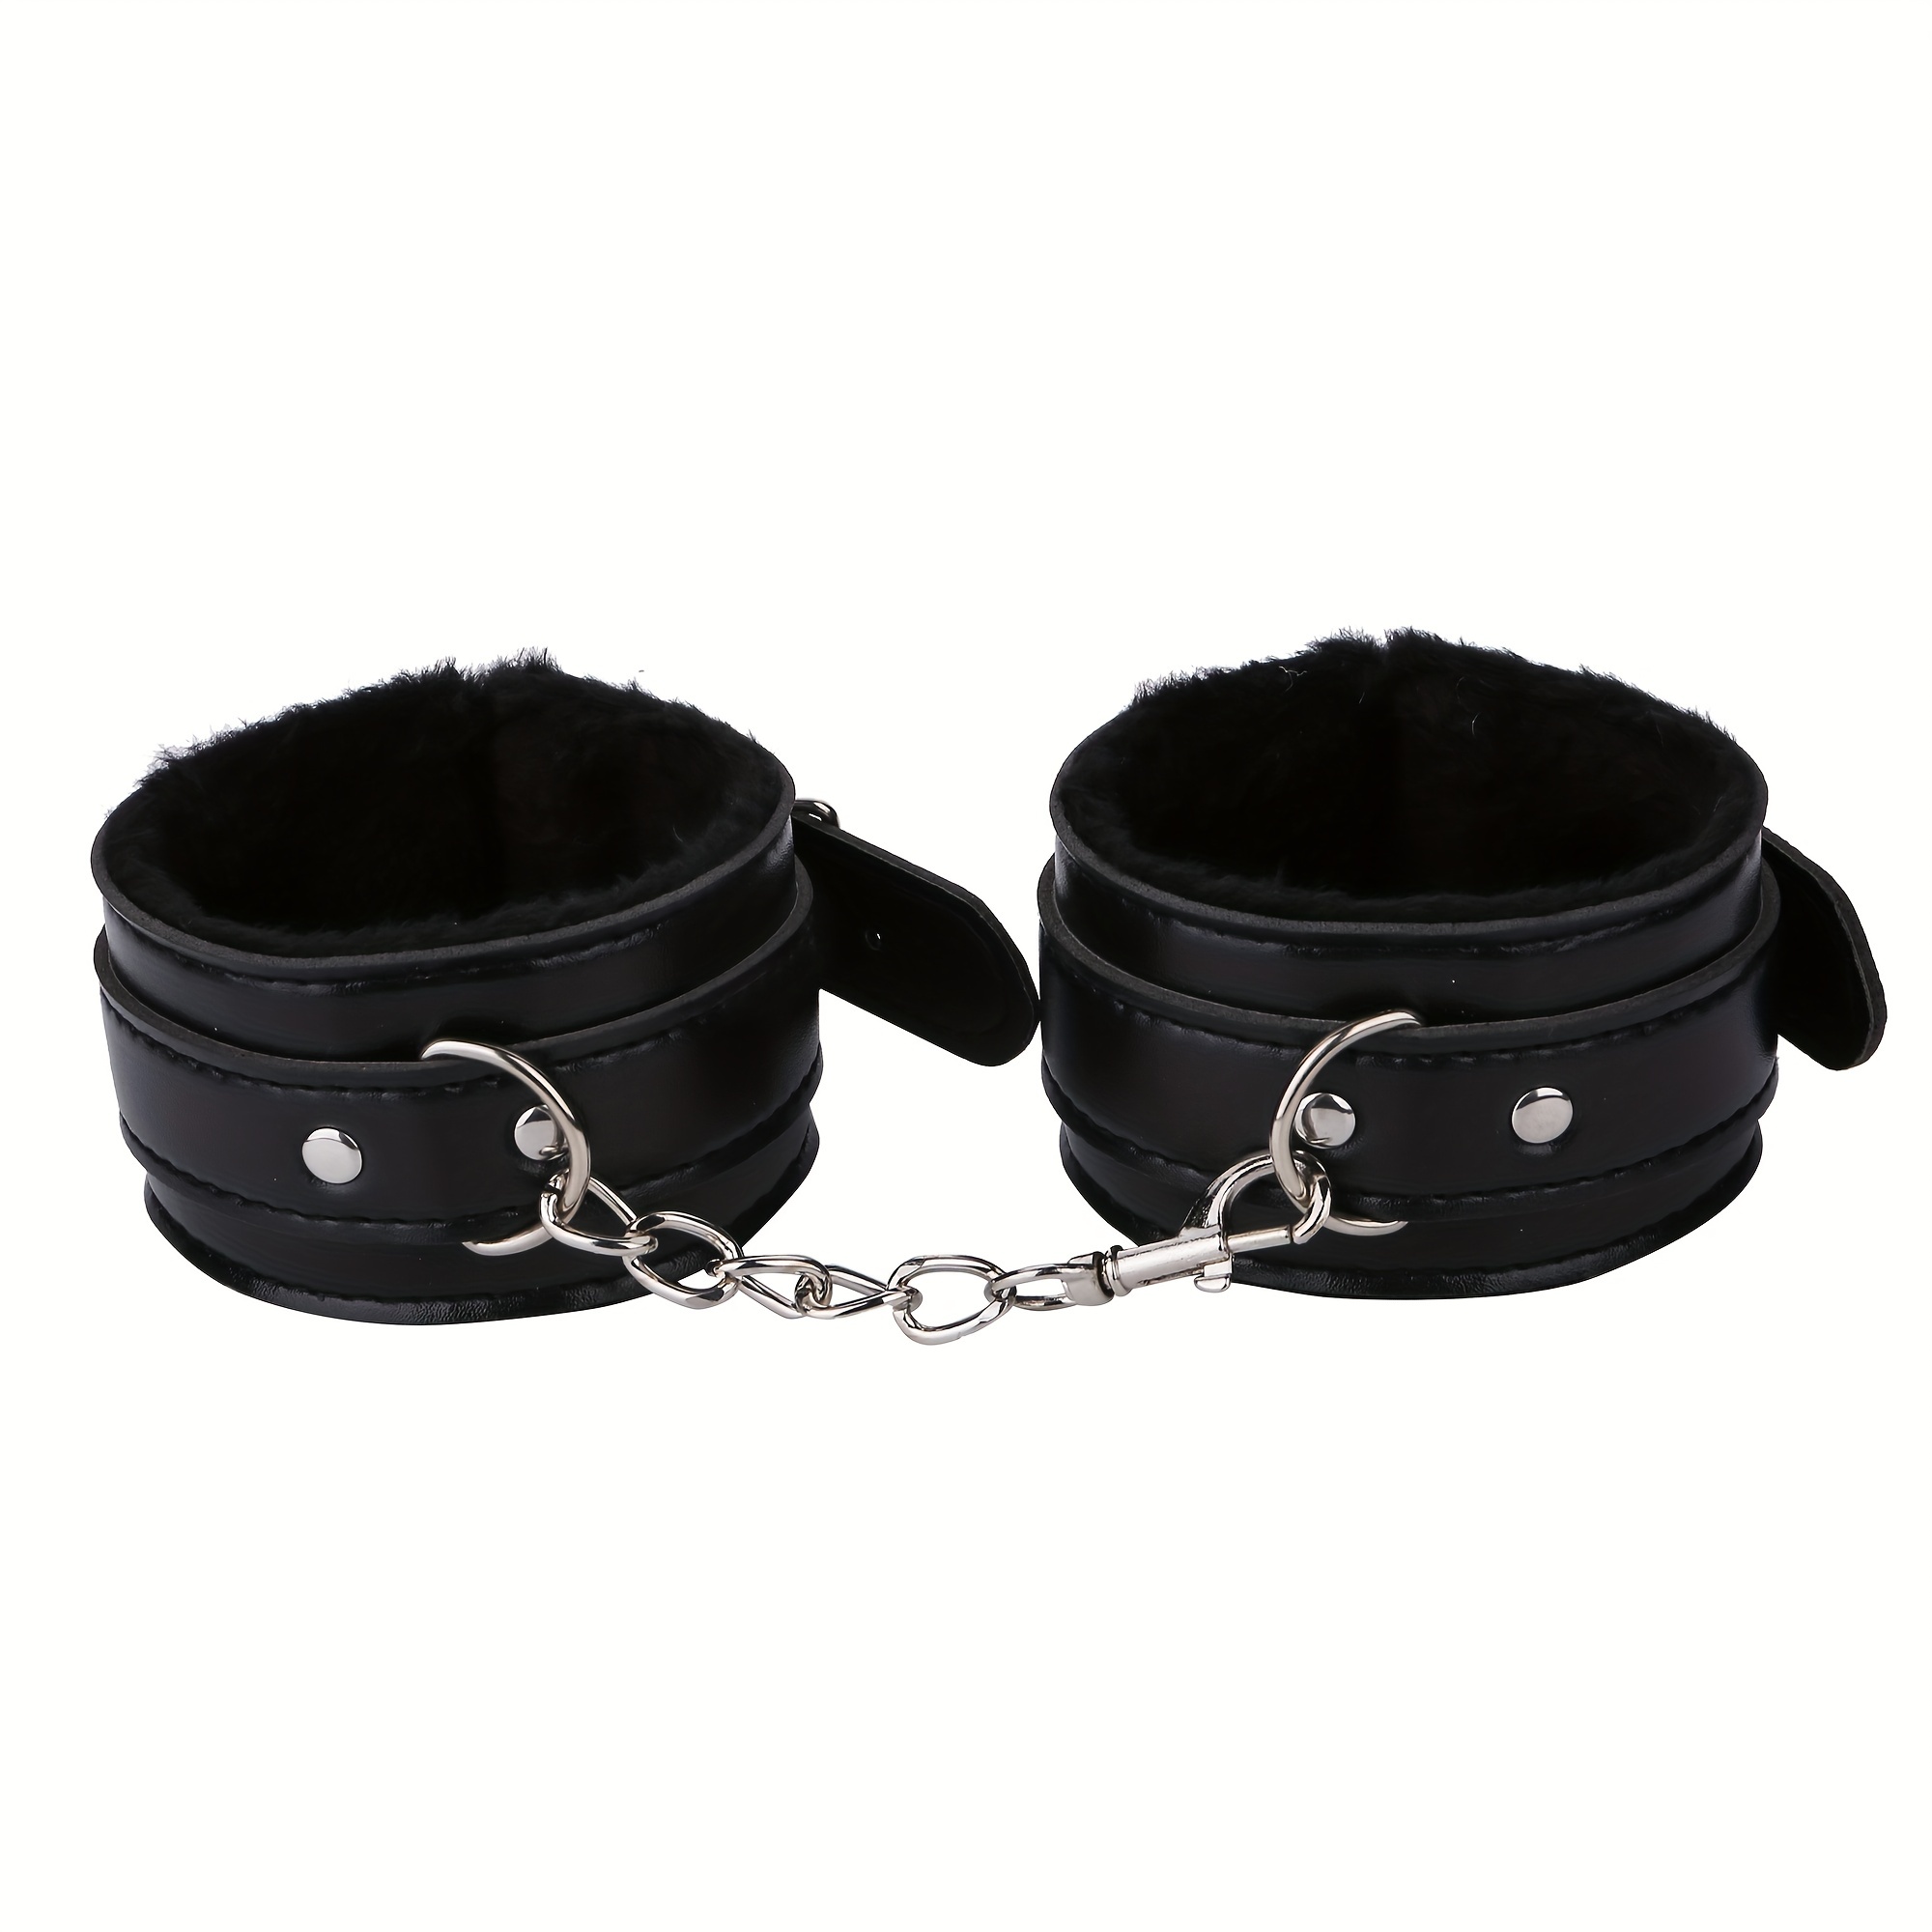 1 set 10 pcs set of ladies' leather black bondage kit BDSM kits mouth plug  nipple clip for fun sex toys